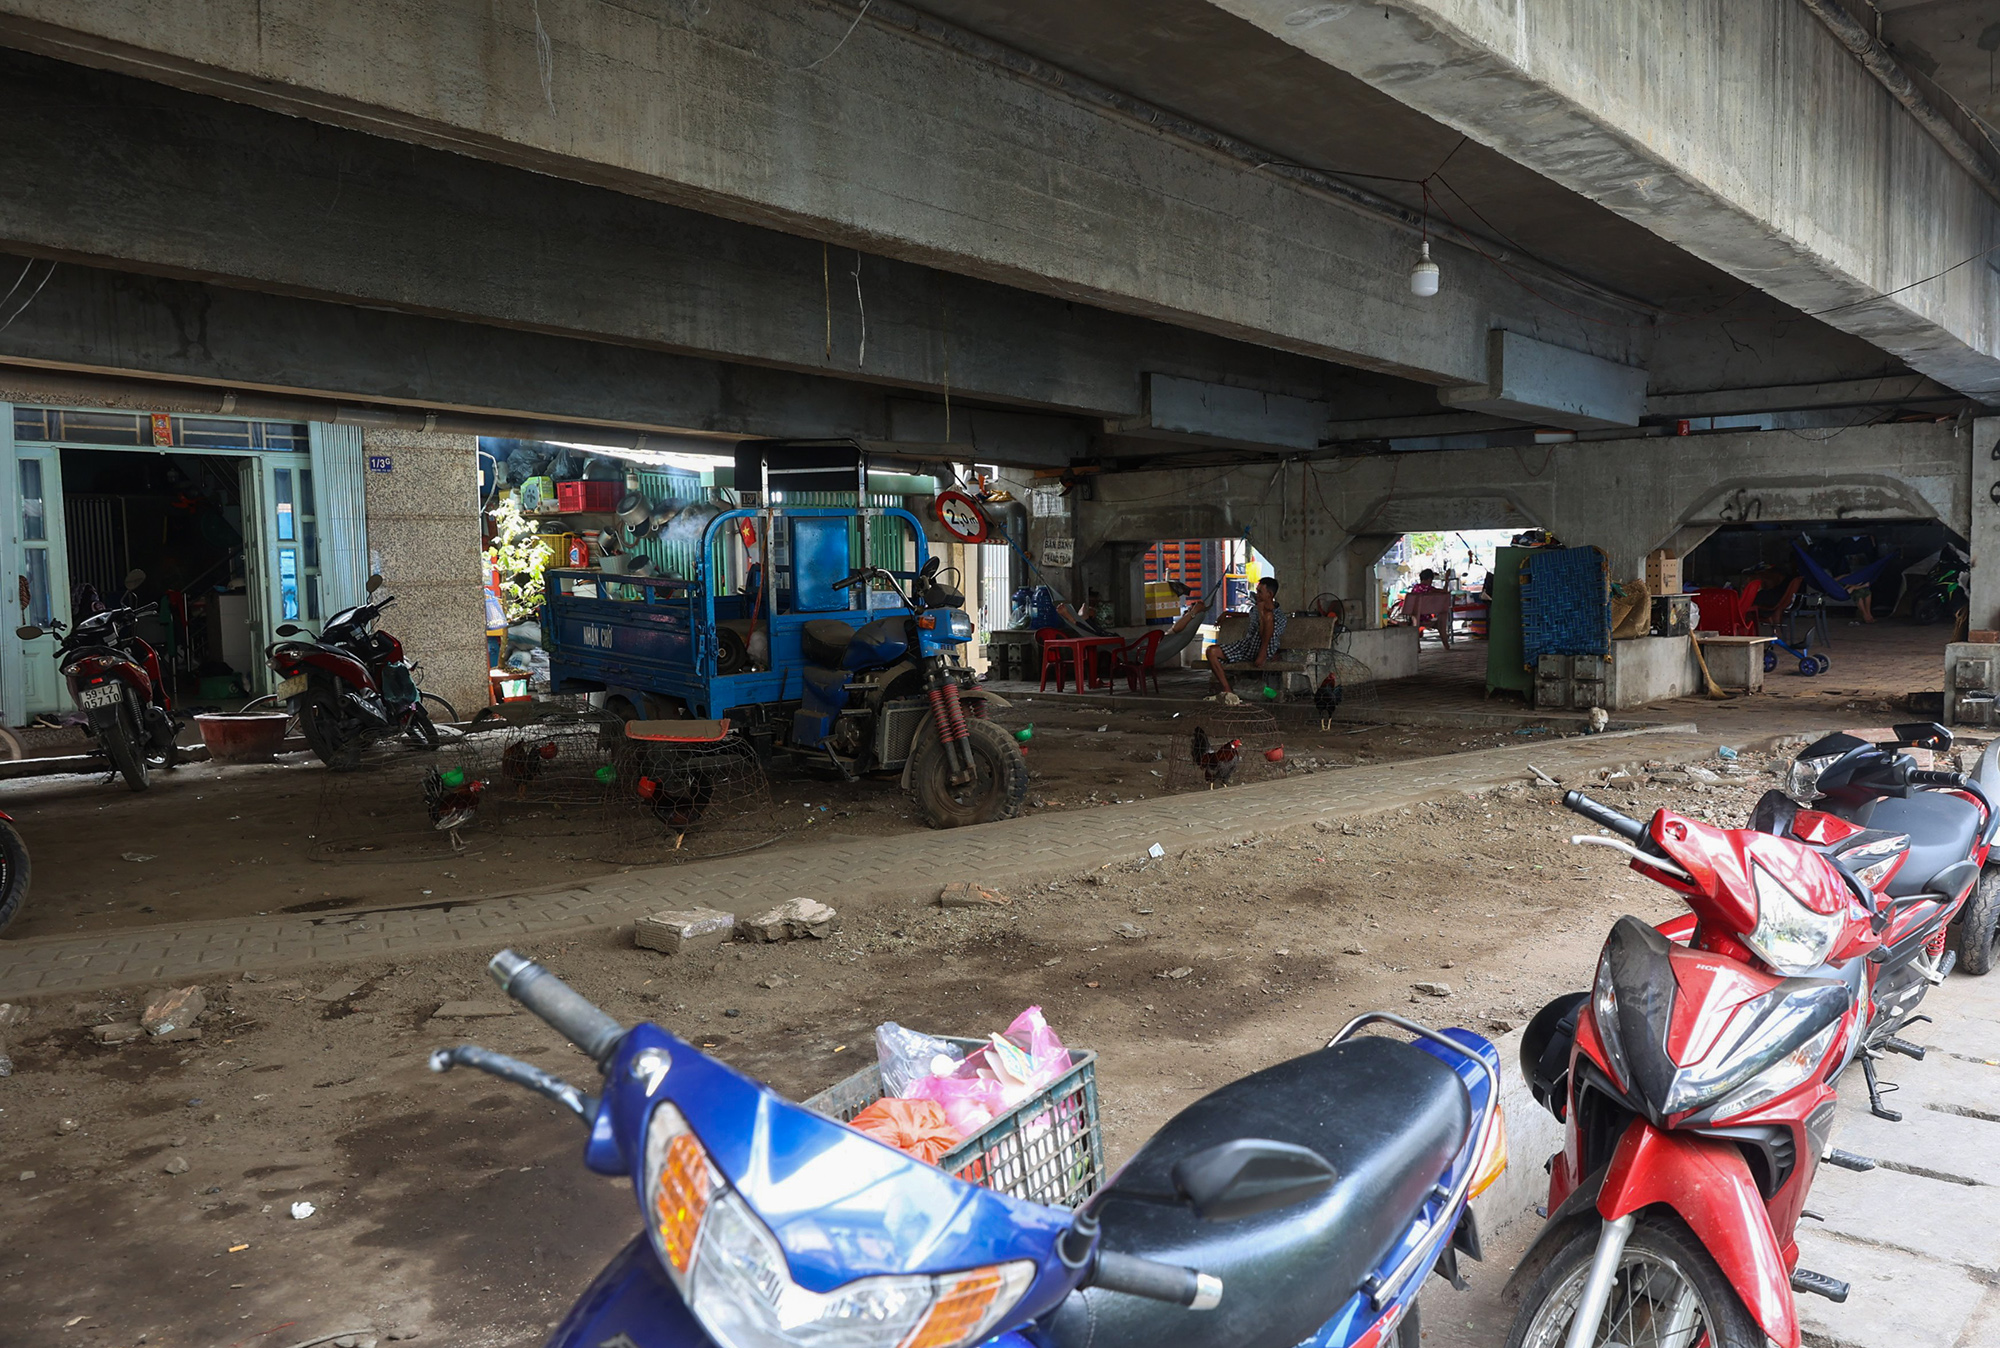 Ghi nhận tại cầu Chữ Y, quận 8, TP.HCM, gầm cầu có không gian khá rộng, người dân dùng để nuôi gà, để đồ đạc khiến gầm cầu nhếch nhác.